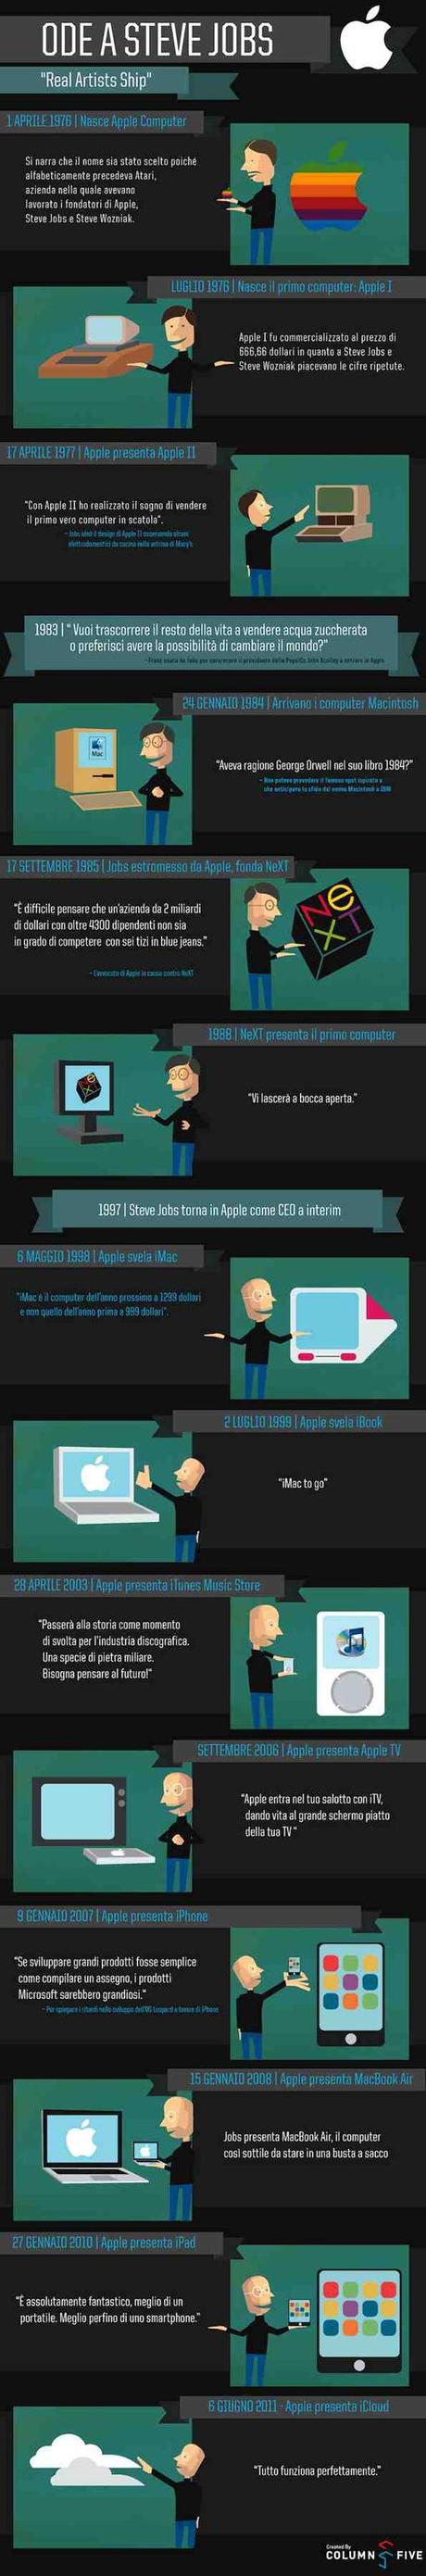 Ode a Steve Jobs: un’iconografia tutta italiana elogia l’ex CEO di Apple